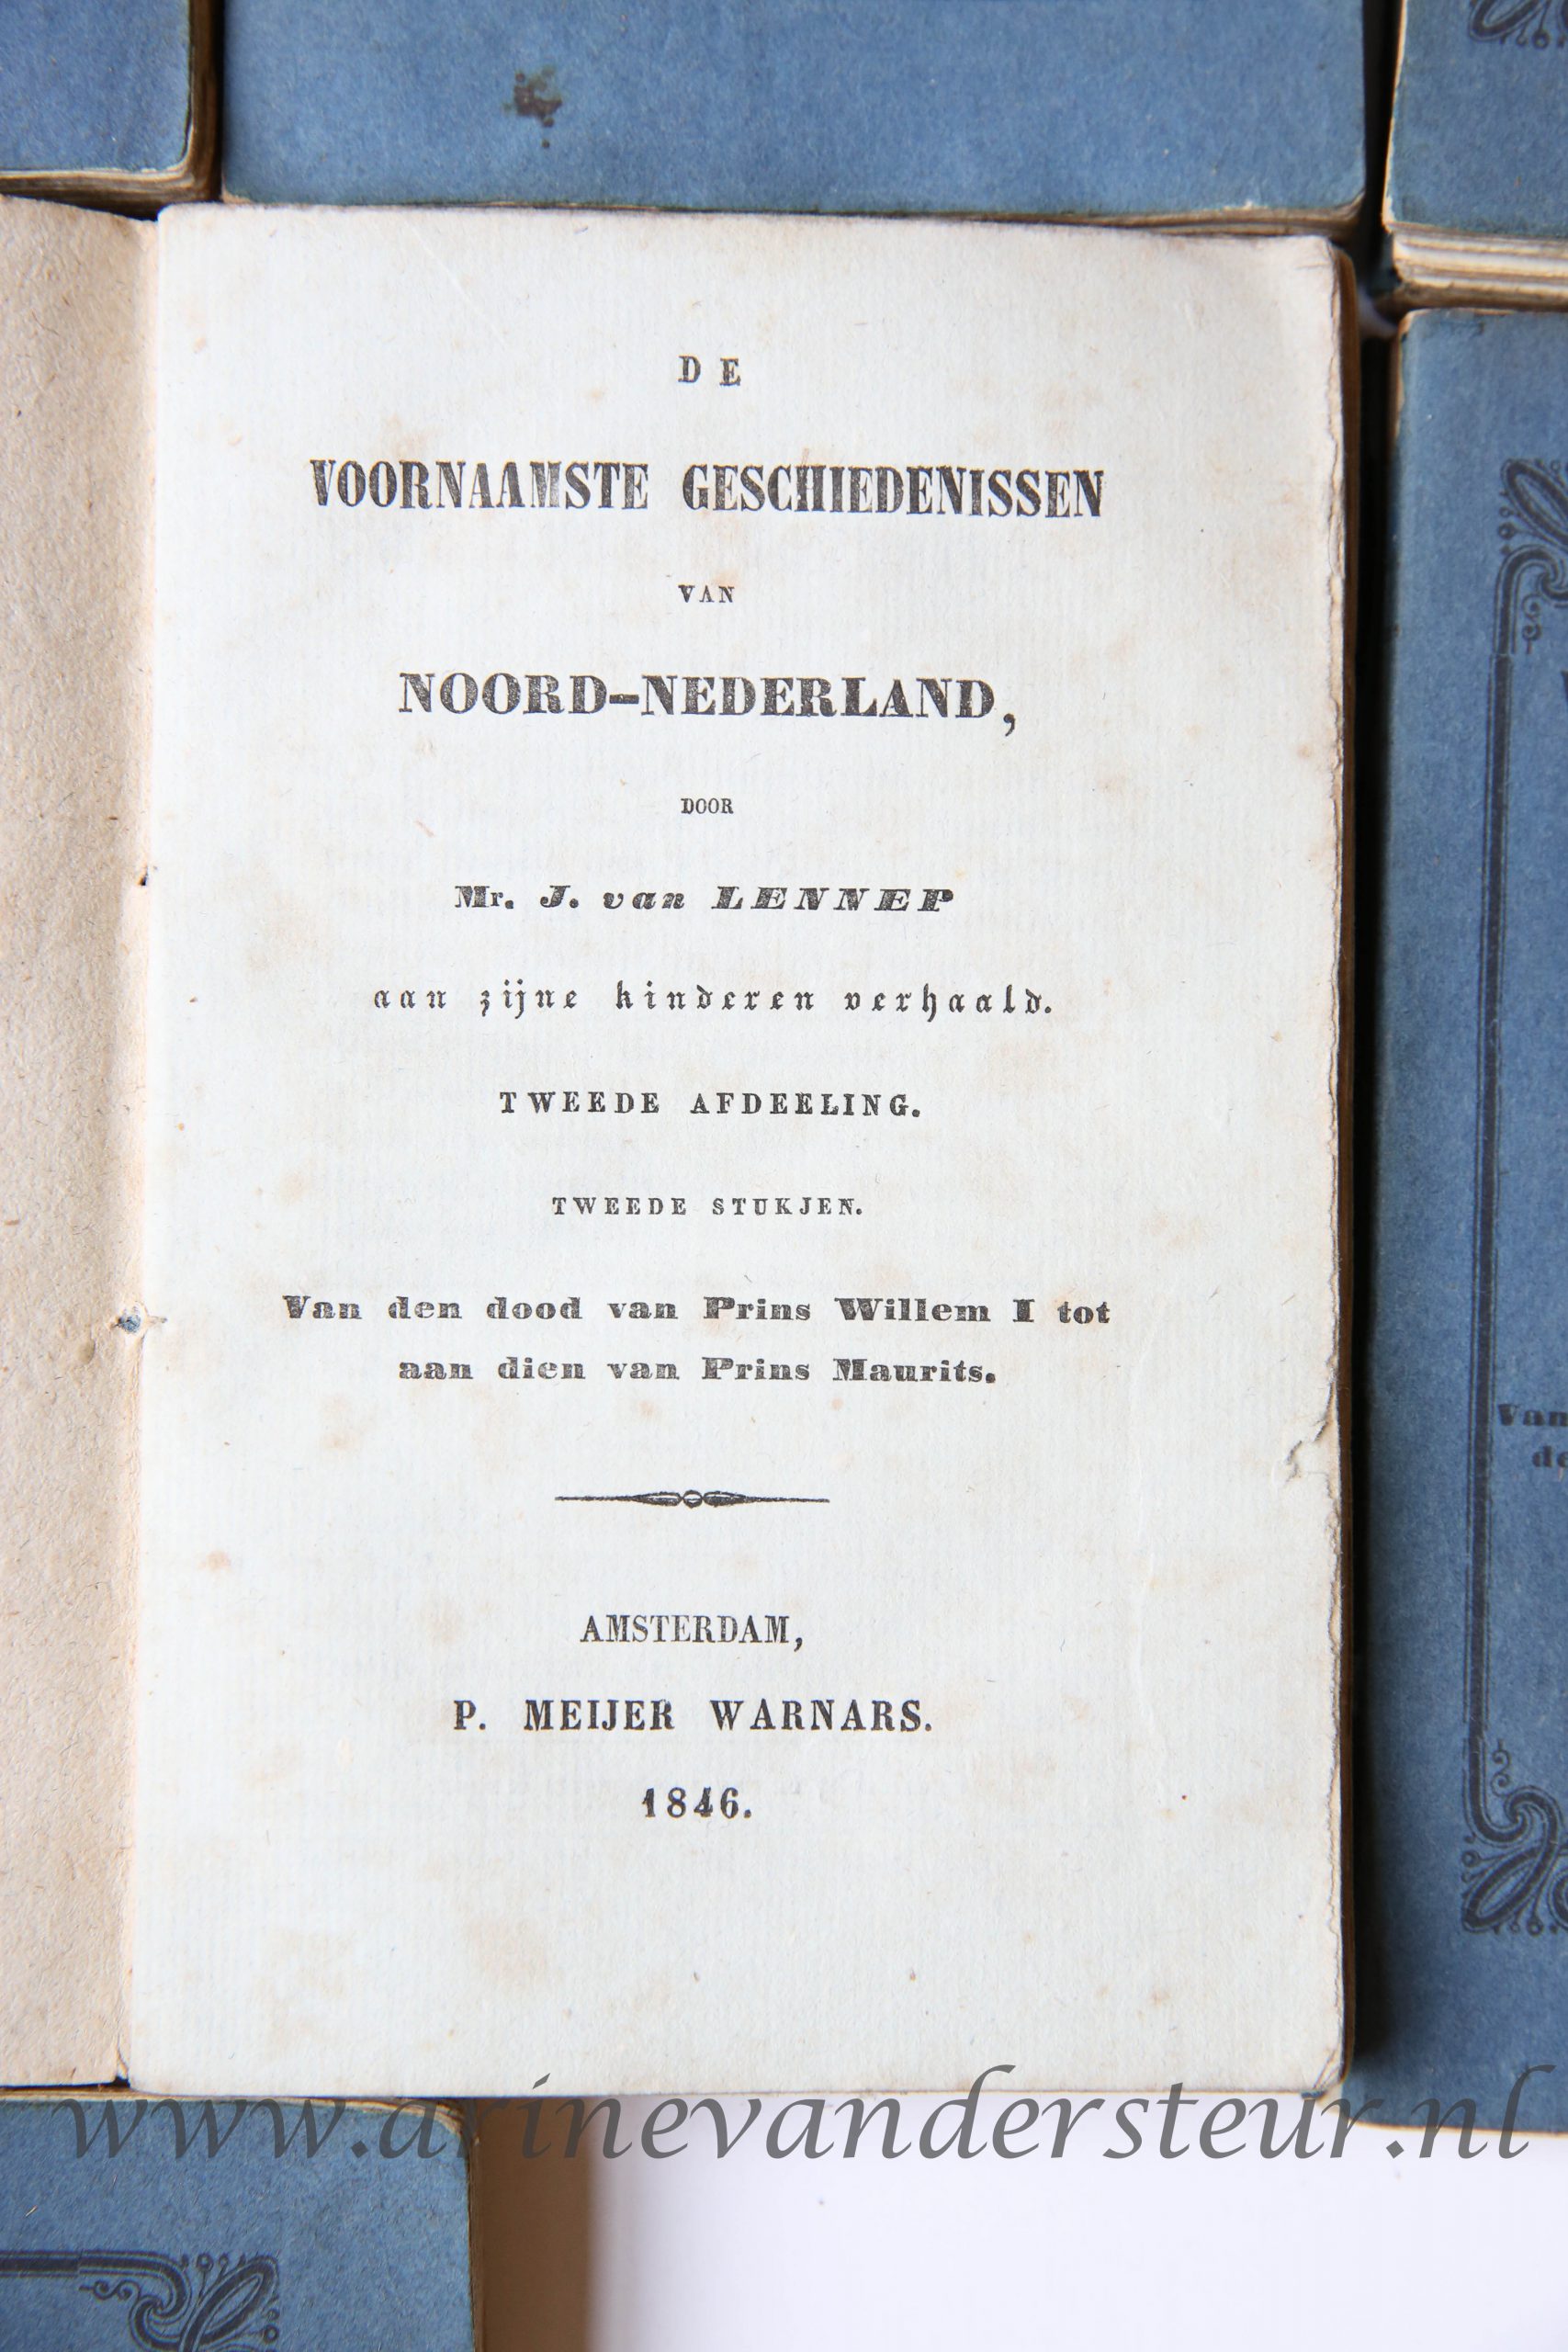 12 volumes of "De voornaamste geschiedenissen van Noord-Nederland, aan zijne kinderen verhaald". Eerste afdeeling t/m vierde afdeeling (Complete set), Amsterdam, P. Meijer Warnars 1846-1851.